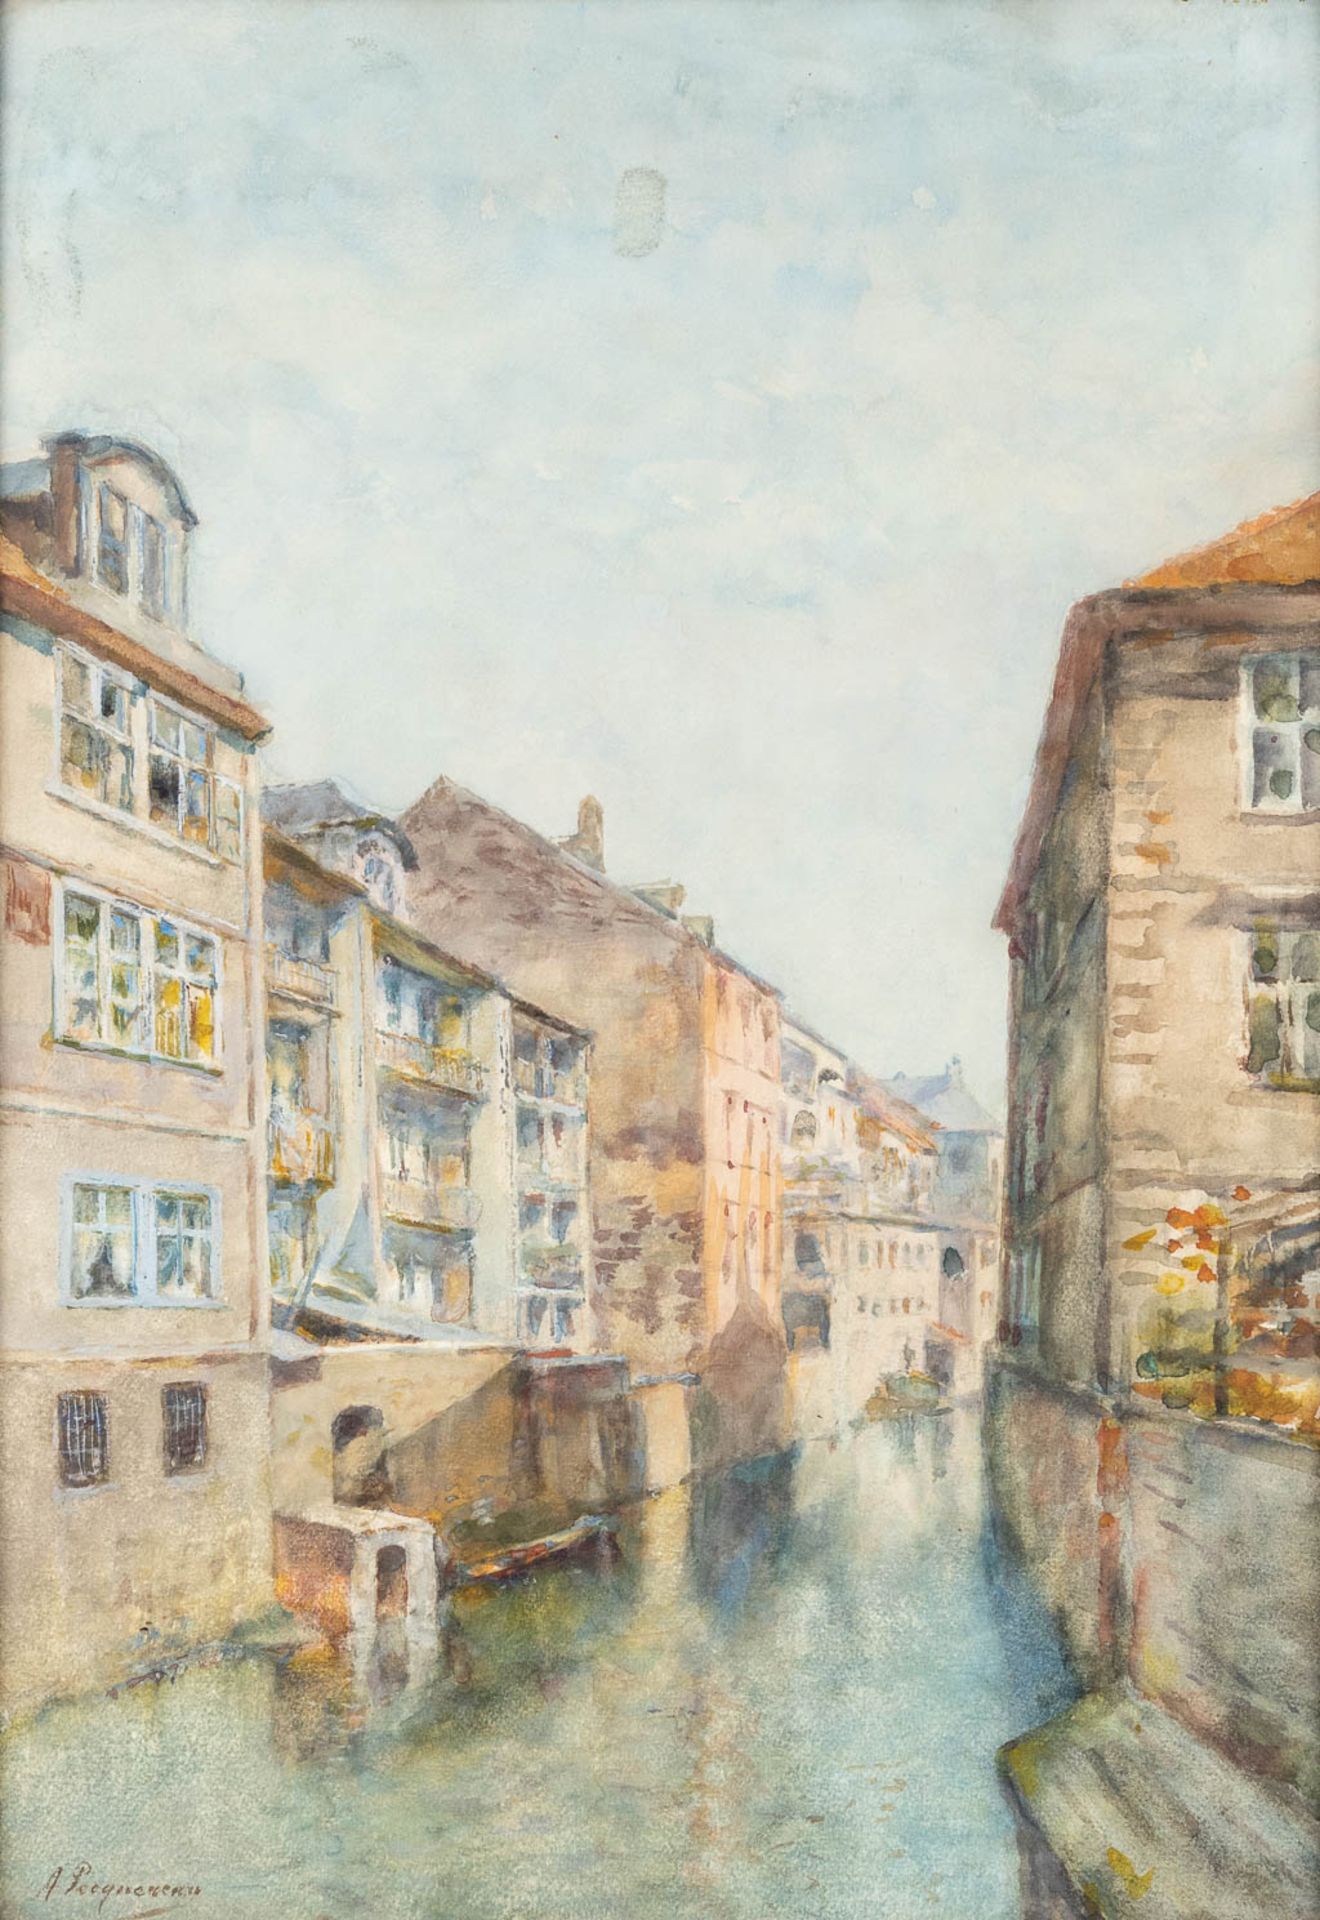 Alphonse PECQUEREAU (1831-1917) 'Canal View' watercolour on paper. (W: 38 x H: 53 cm)